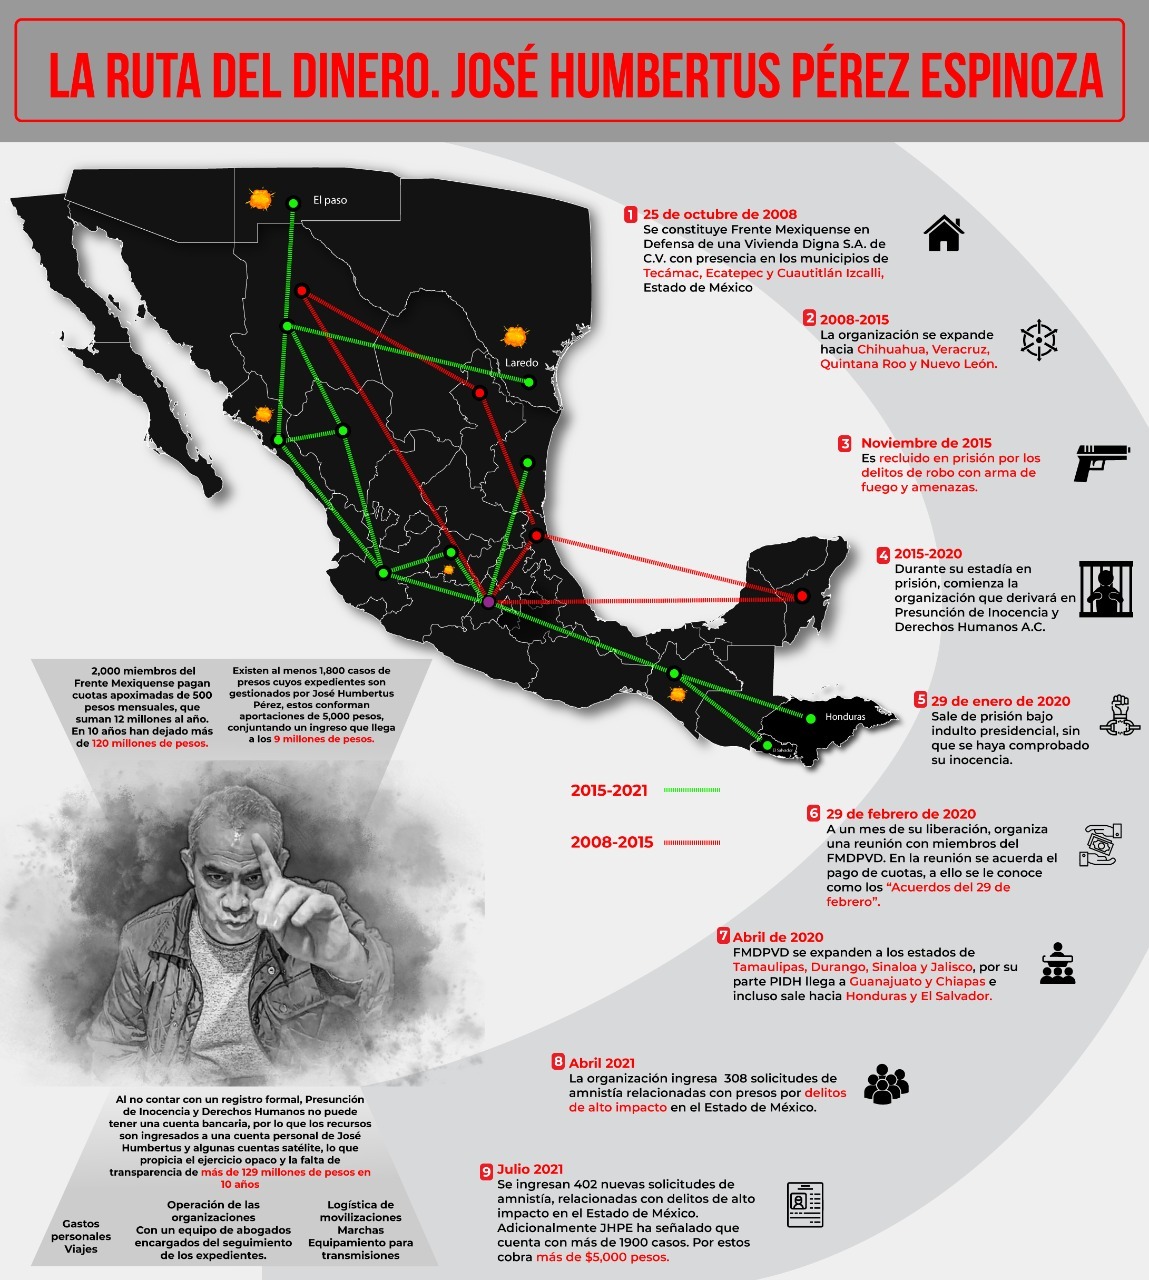 José Humbertus Pérez Espinoza: La ruta del dinero